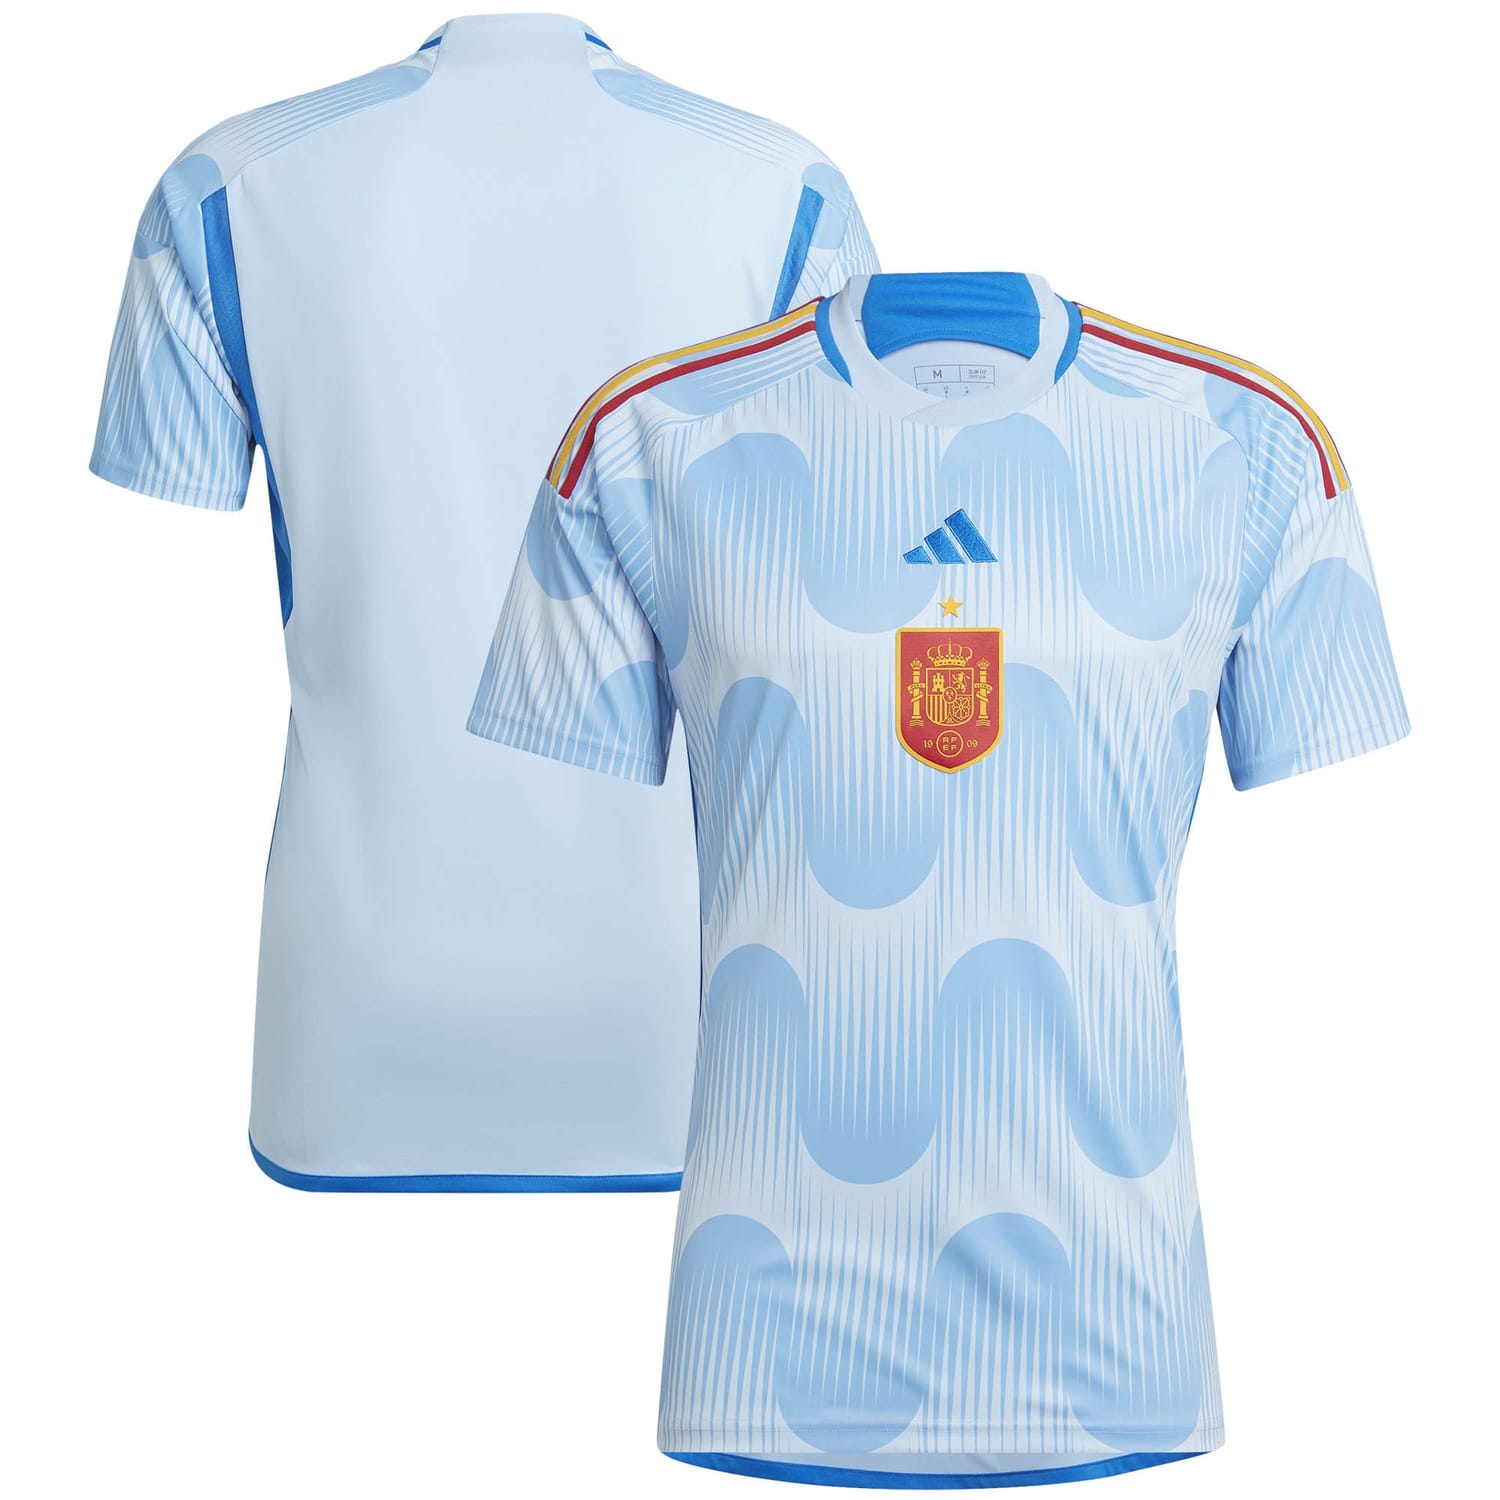 Spain National Team Away Jersey Shirt 2022 for Men